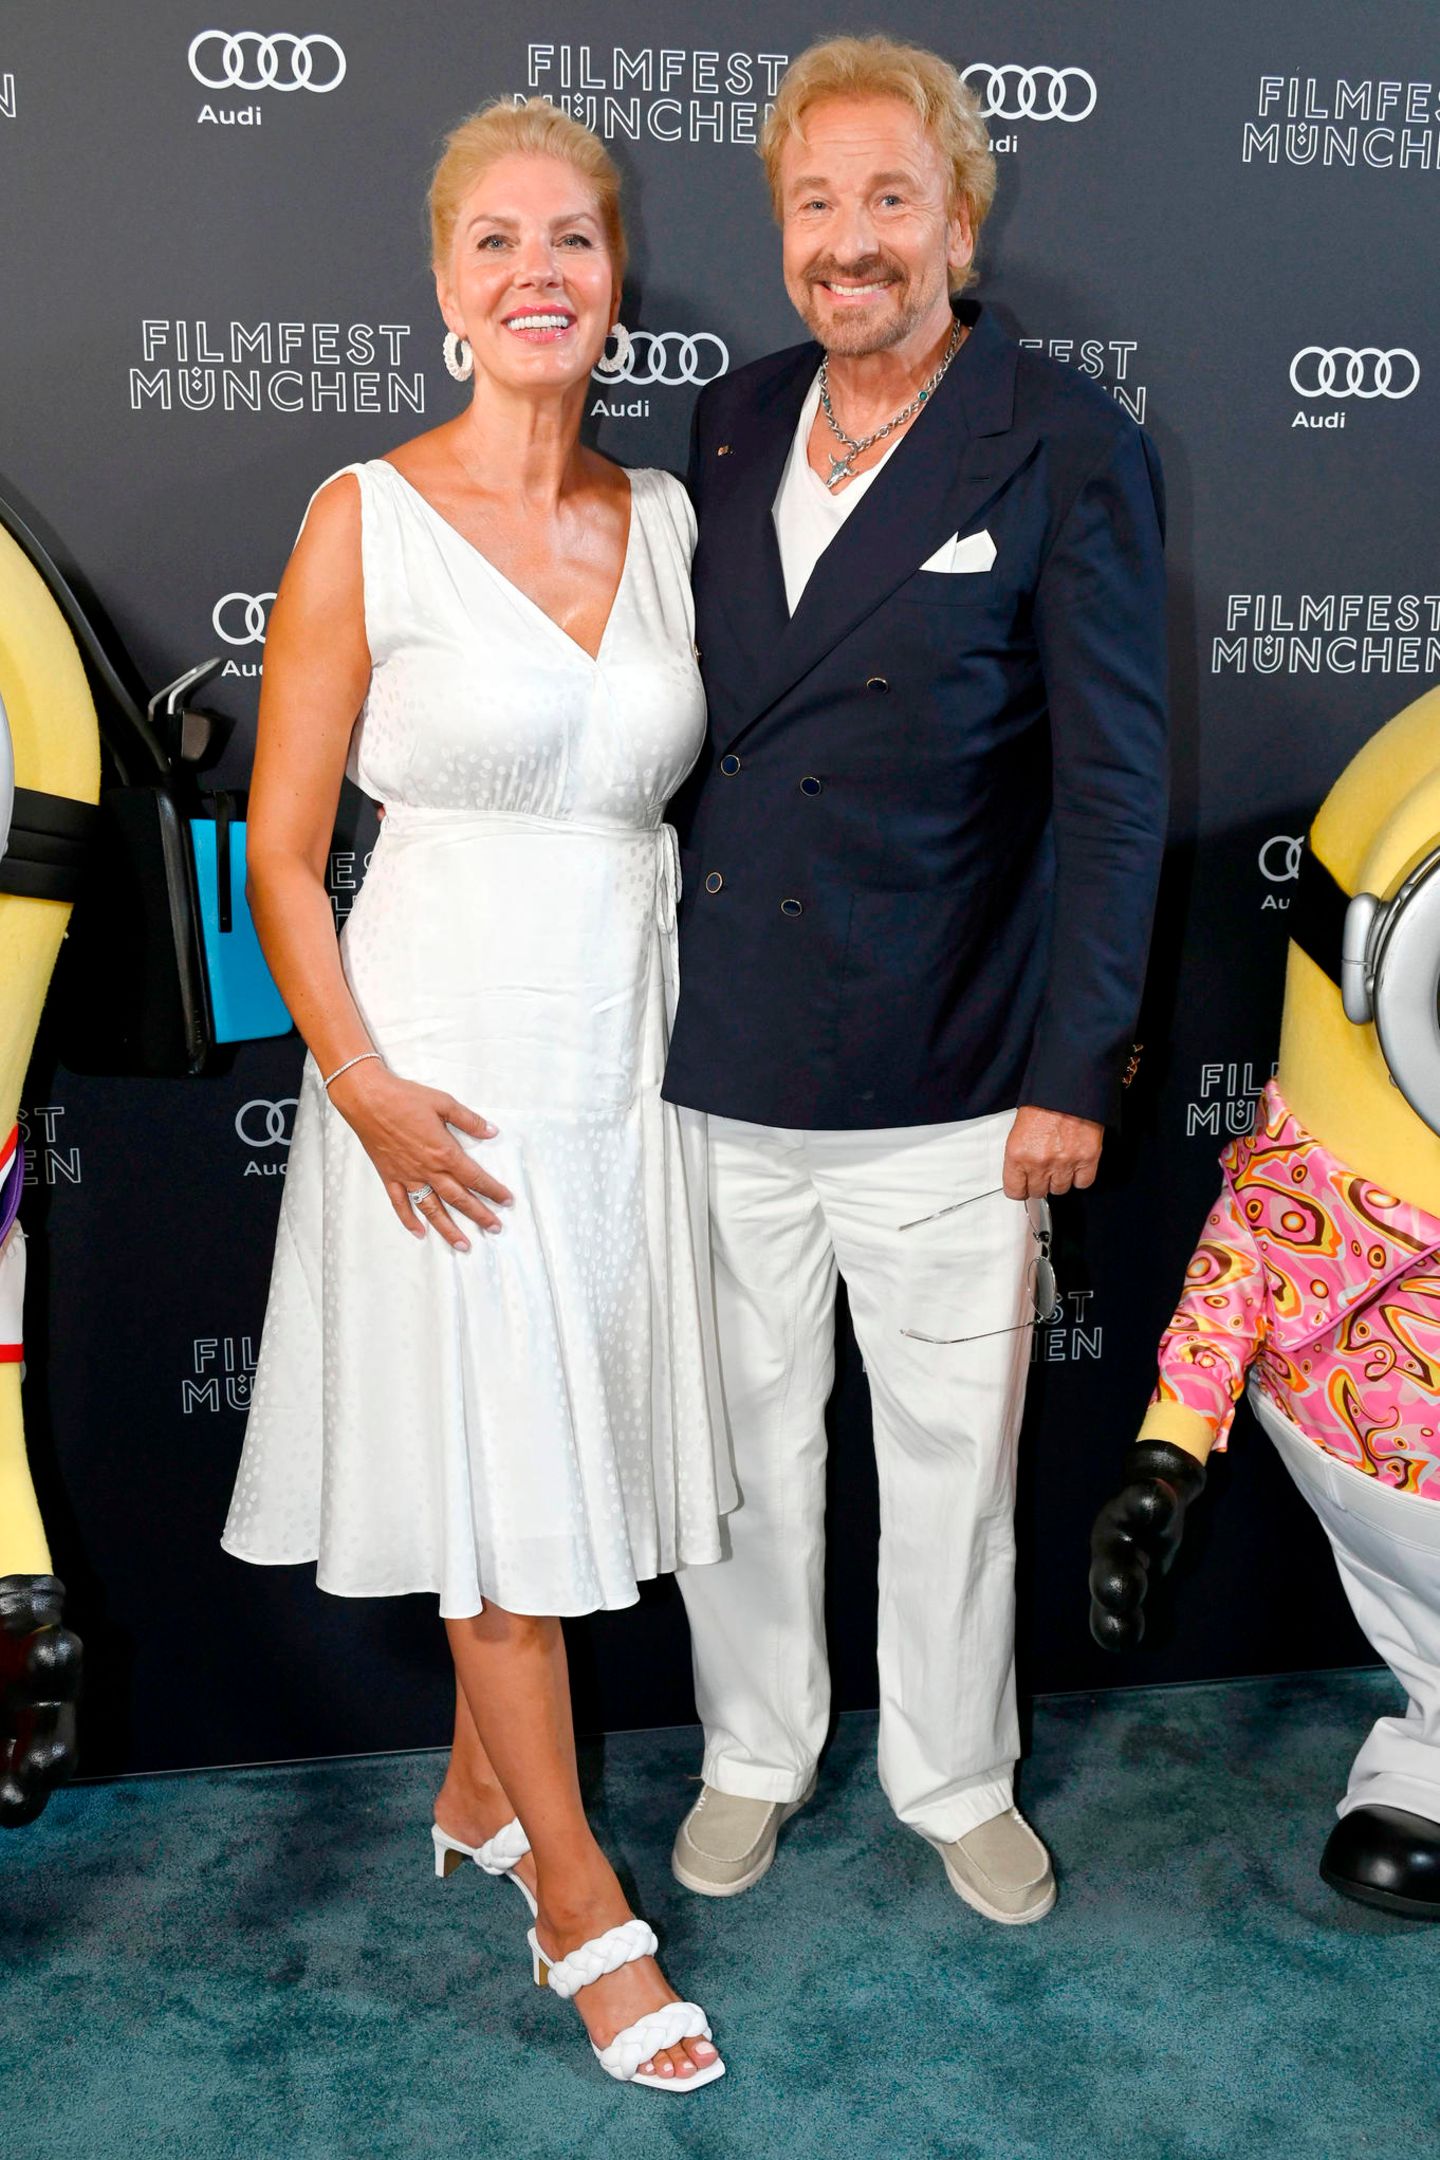 Thomas Gottschalk besucht gemeinsam mit seiner Partnerin Karina Mroß die Premiere von "'Minions - Auf der Suche nach dem Mini-Boss". Sichtlich gut gelaunt zeigt sich das Paar auf dem roten Teppich. Doch auch optisch harmonieren die beiden mit weißem Sommerkleid und weiß-blauem Anzug perfekt.